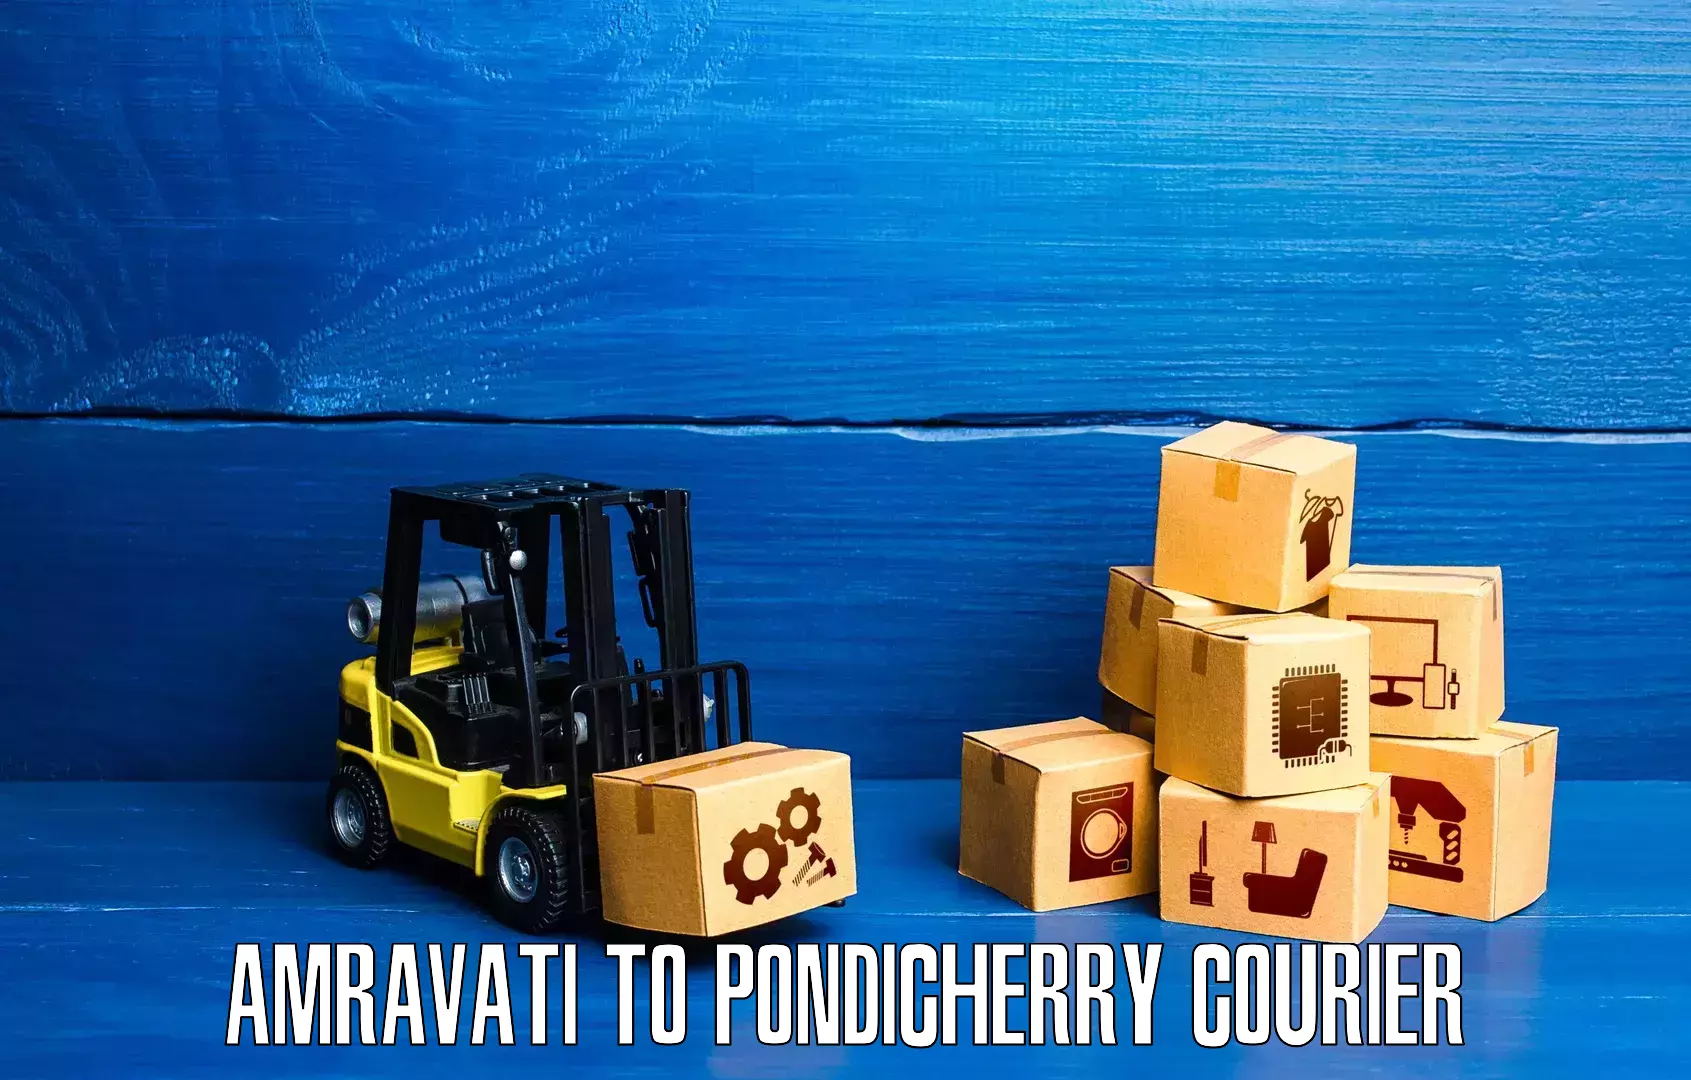 Modern courier technology Amravati to NIT Puducherry